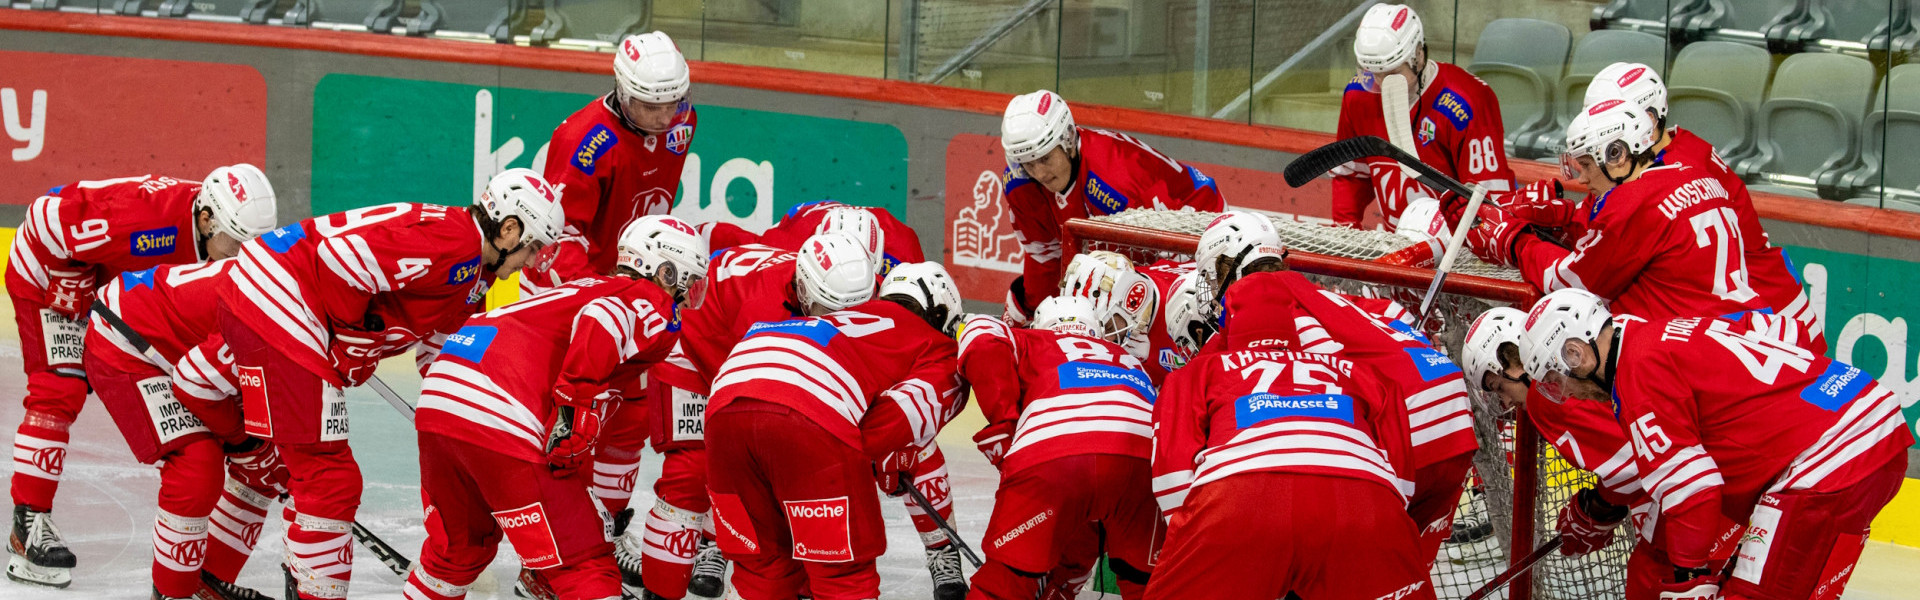 Nach 311 Spielen endet das Alps Hockey League-Engagement für das Future Team des EC-KAC